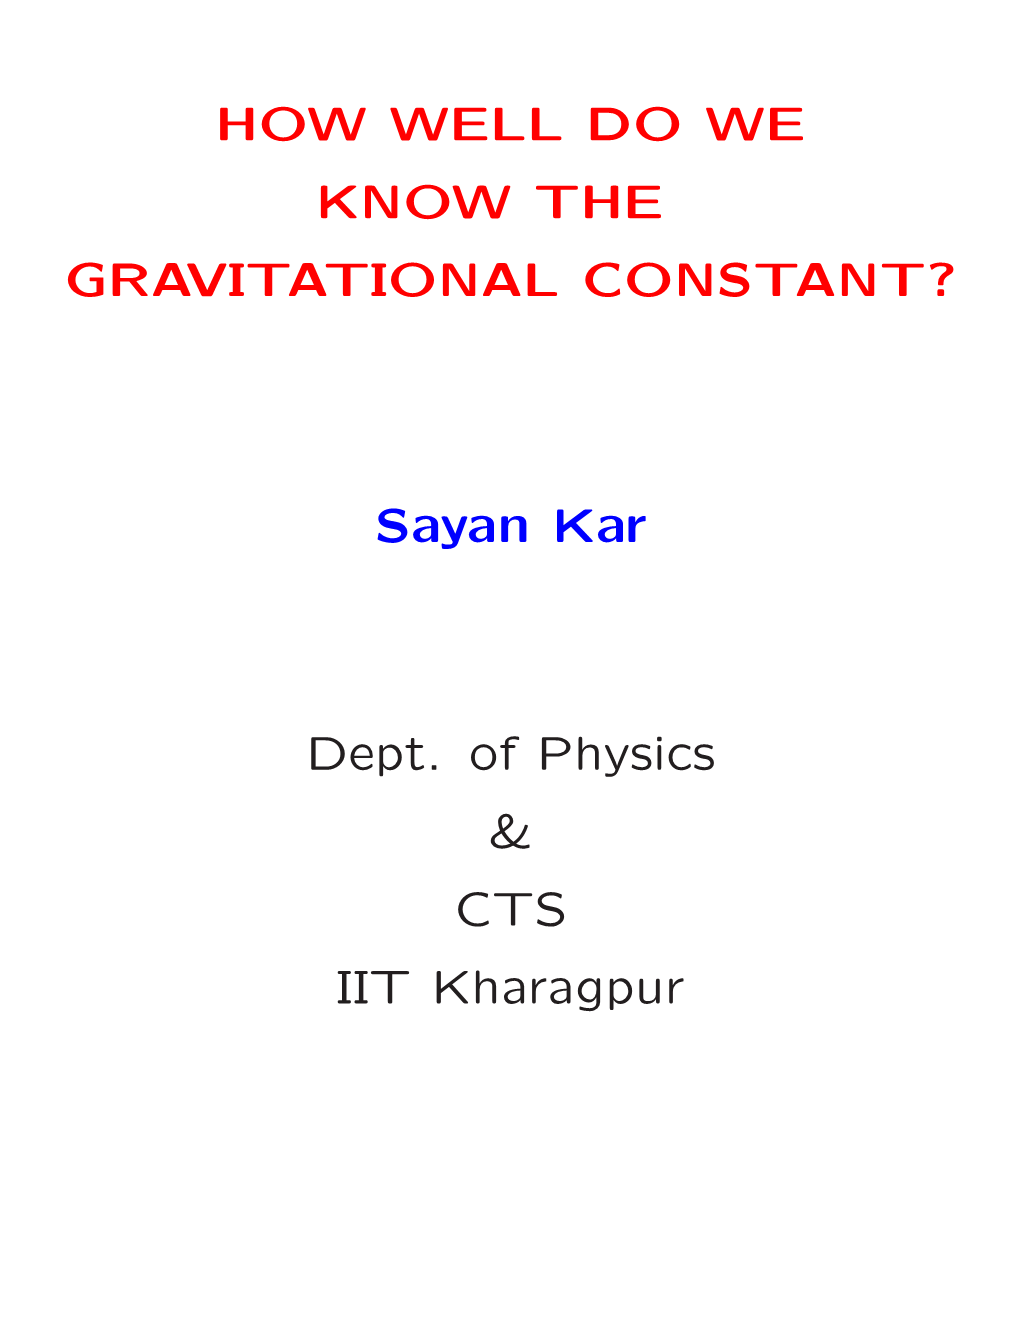 Sayan Kar Dept. of Physics & CTS IIT Kharagpur